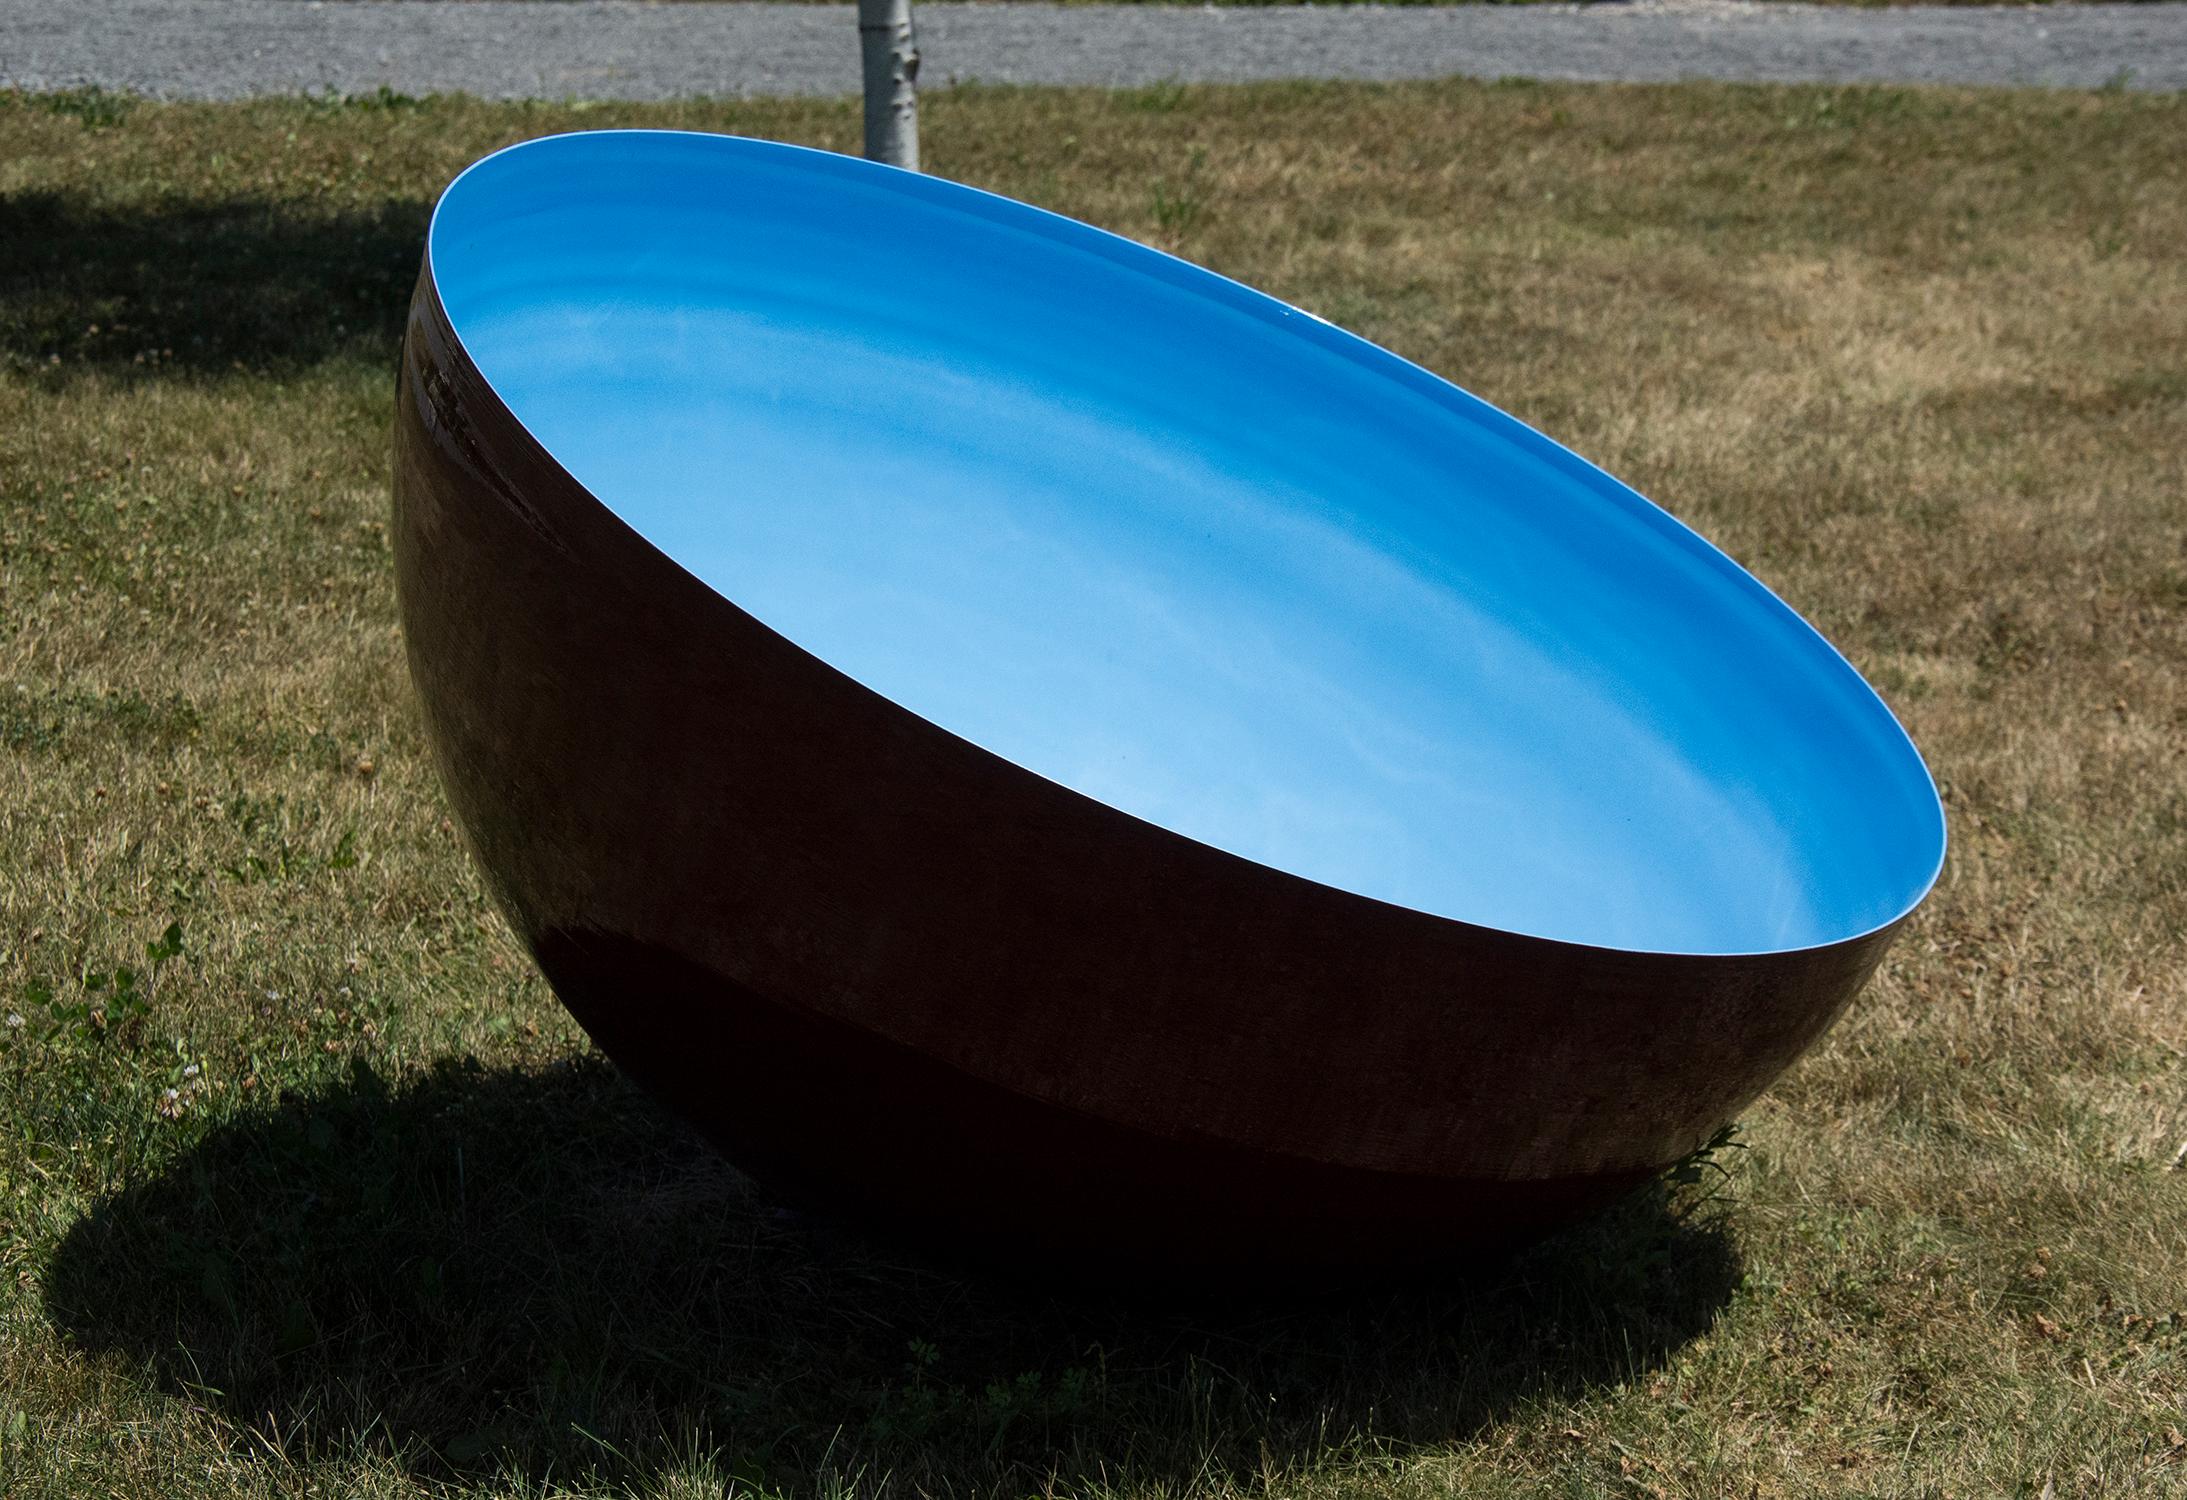 Eine große Schale aus Edelstahl ist von der Bildhauerin Marlene Hilton Moore in einem satten Cerulean-Blau beschichtet. Diese großformatige Version für den Außenbereich basiert auf tibetischen Klangschalen und kann mit einem Holzschlegel zum Klingen